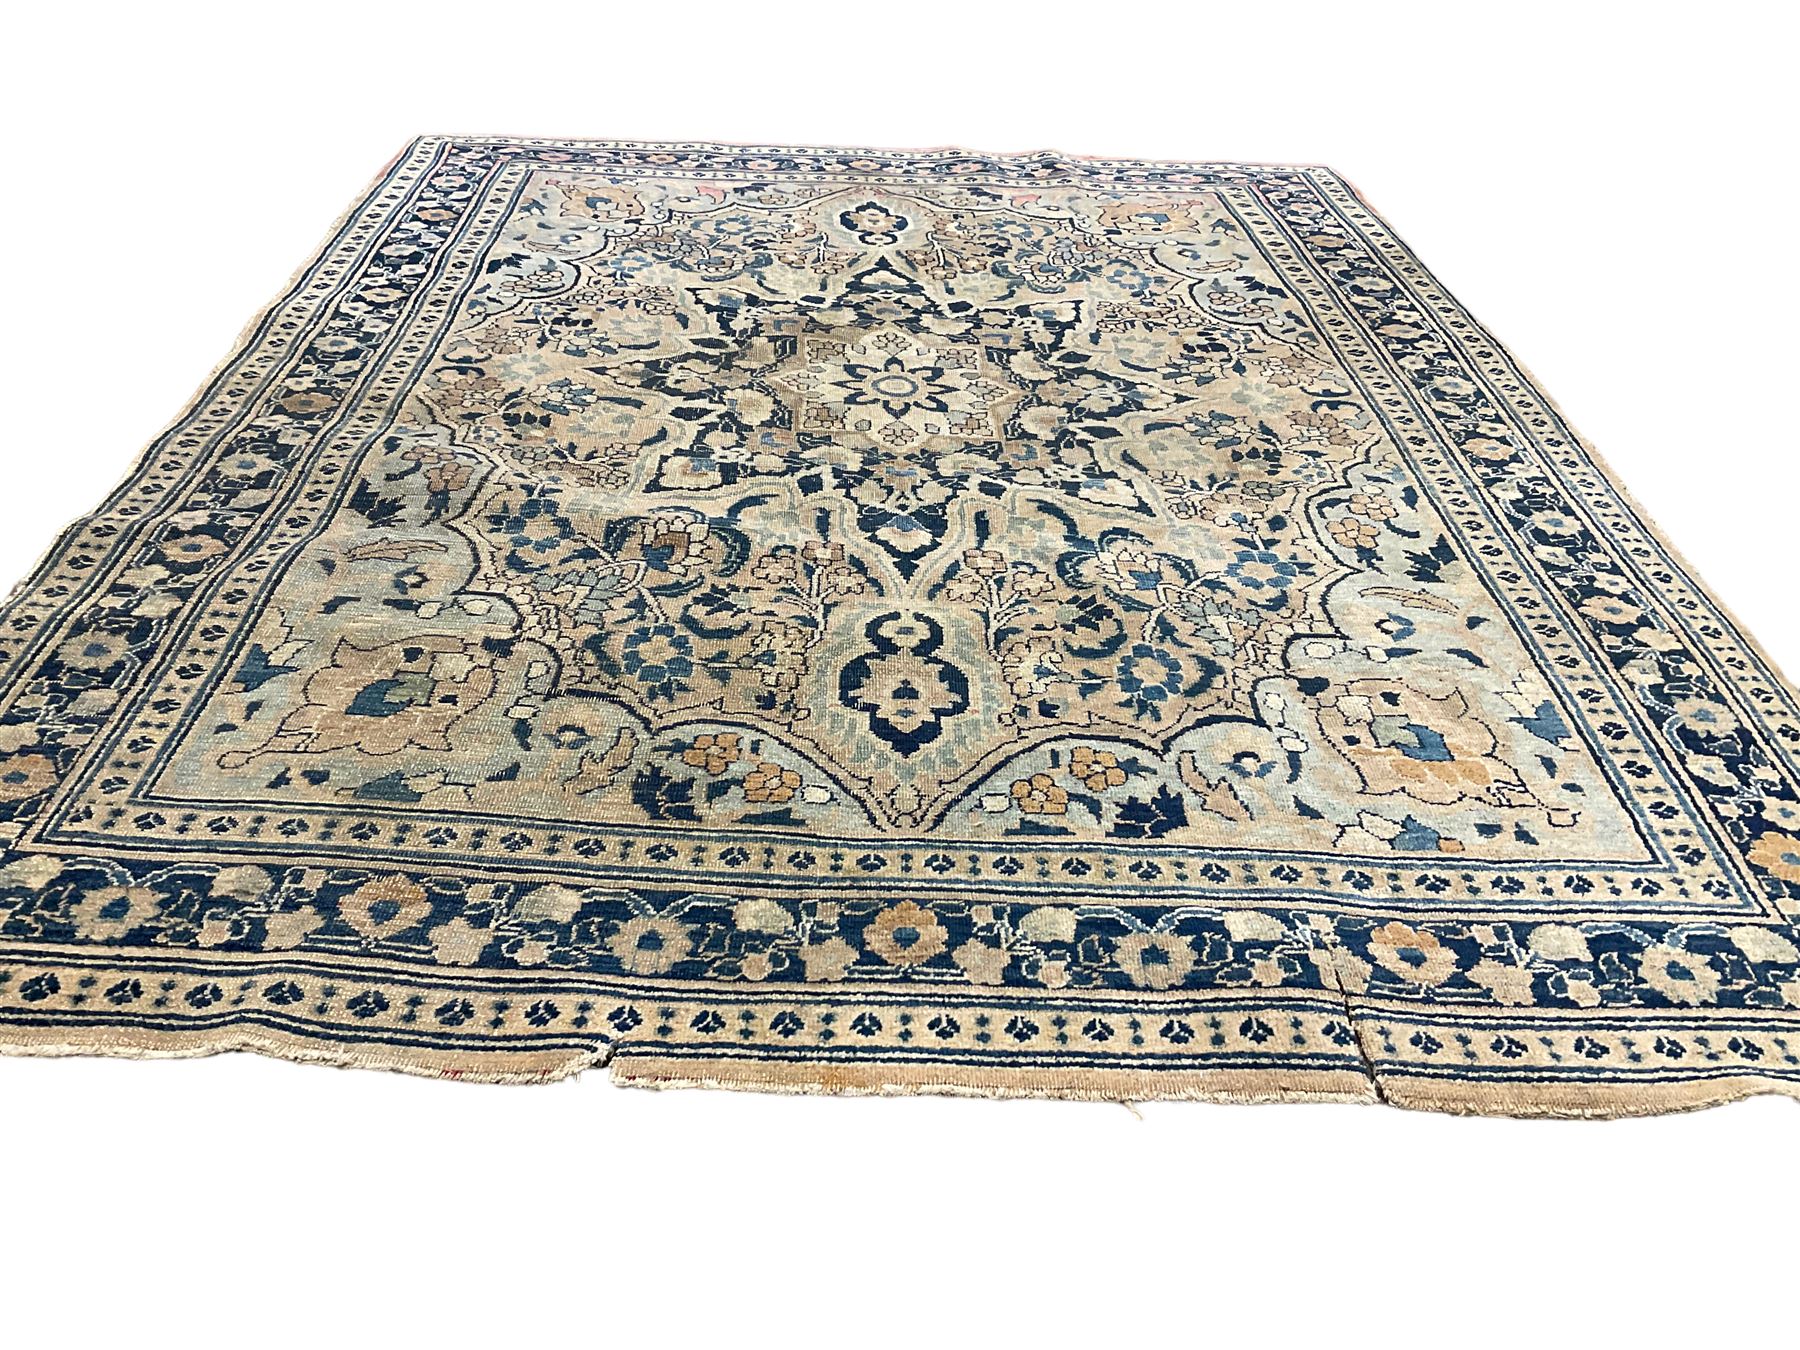 Antique Persian Nain indigo and ivory rug - Image 4 of 6